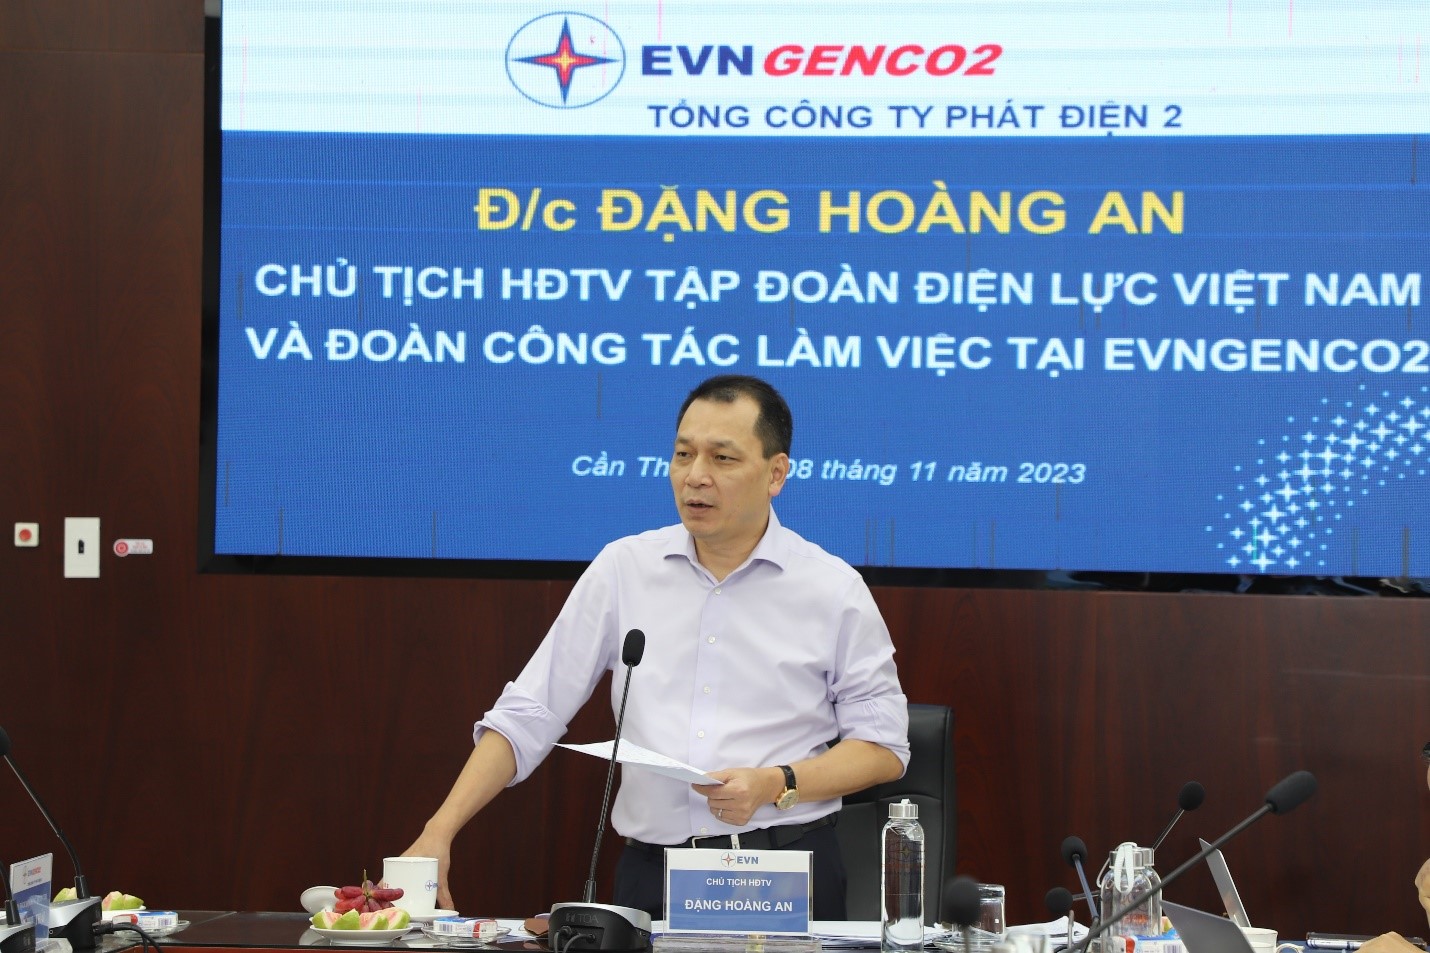 Chủ tịch HĐTV EVN Đặng Hoàng An làm việc với EVNGENCO2